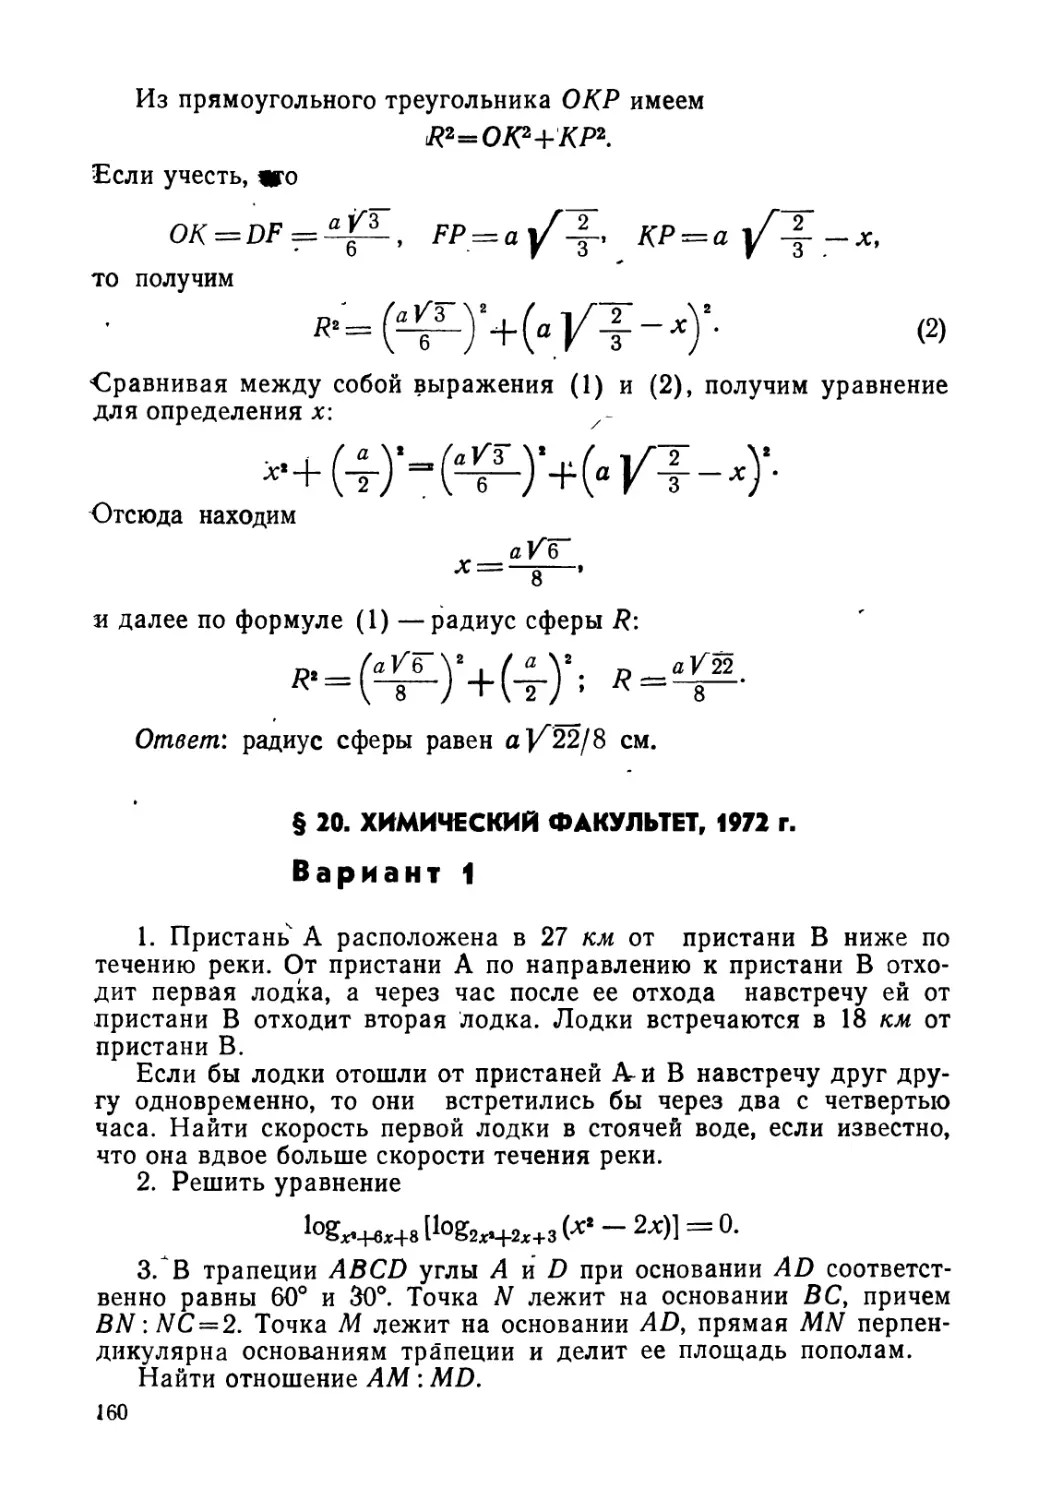 § 20. Химический факультет, 1972 г